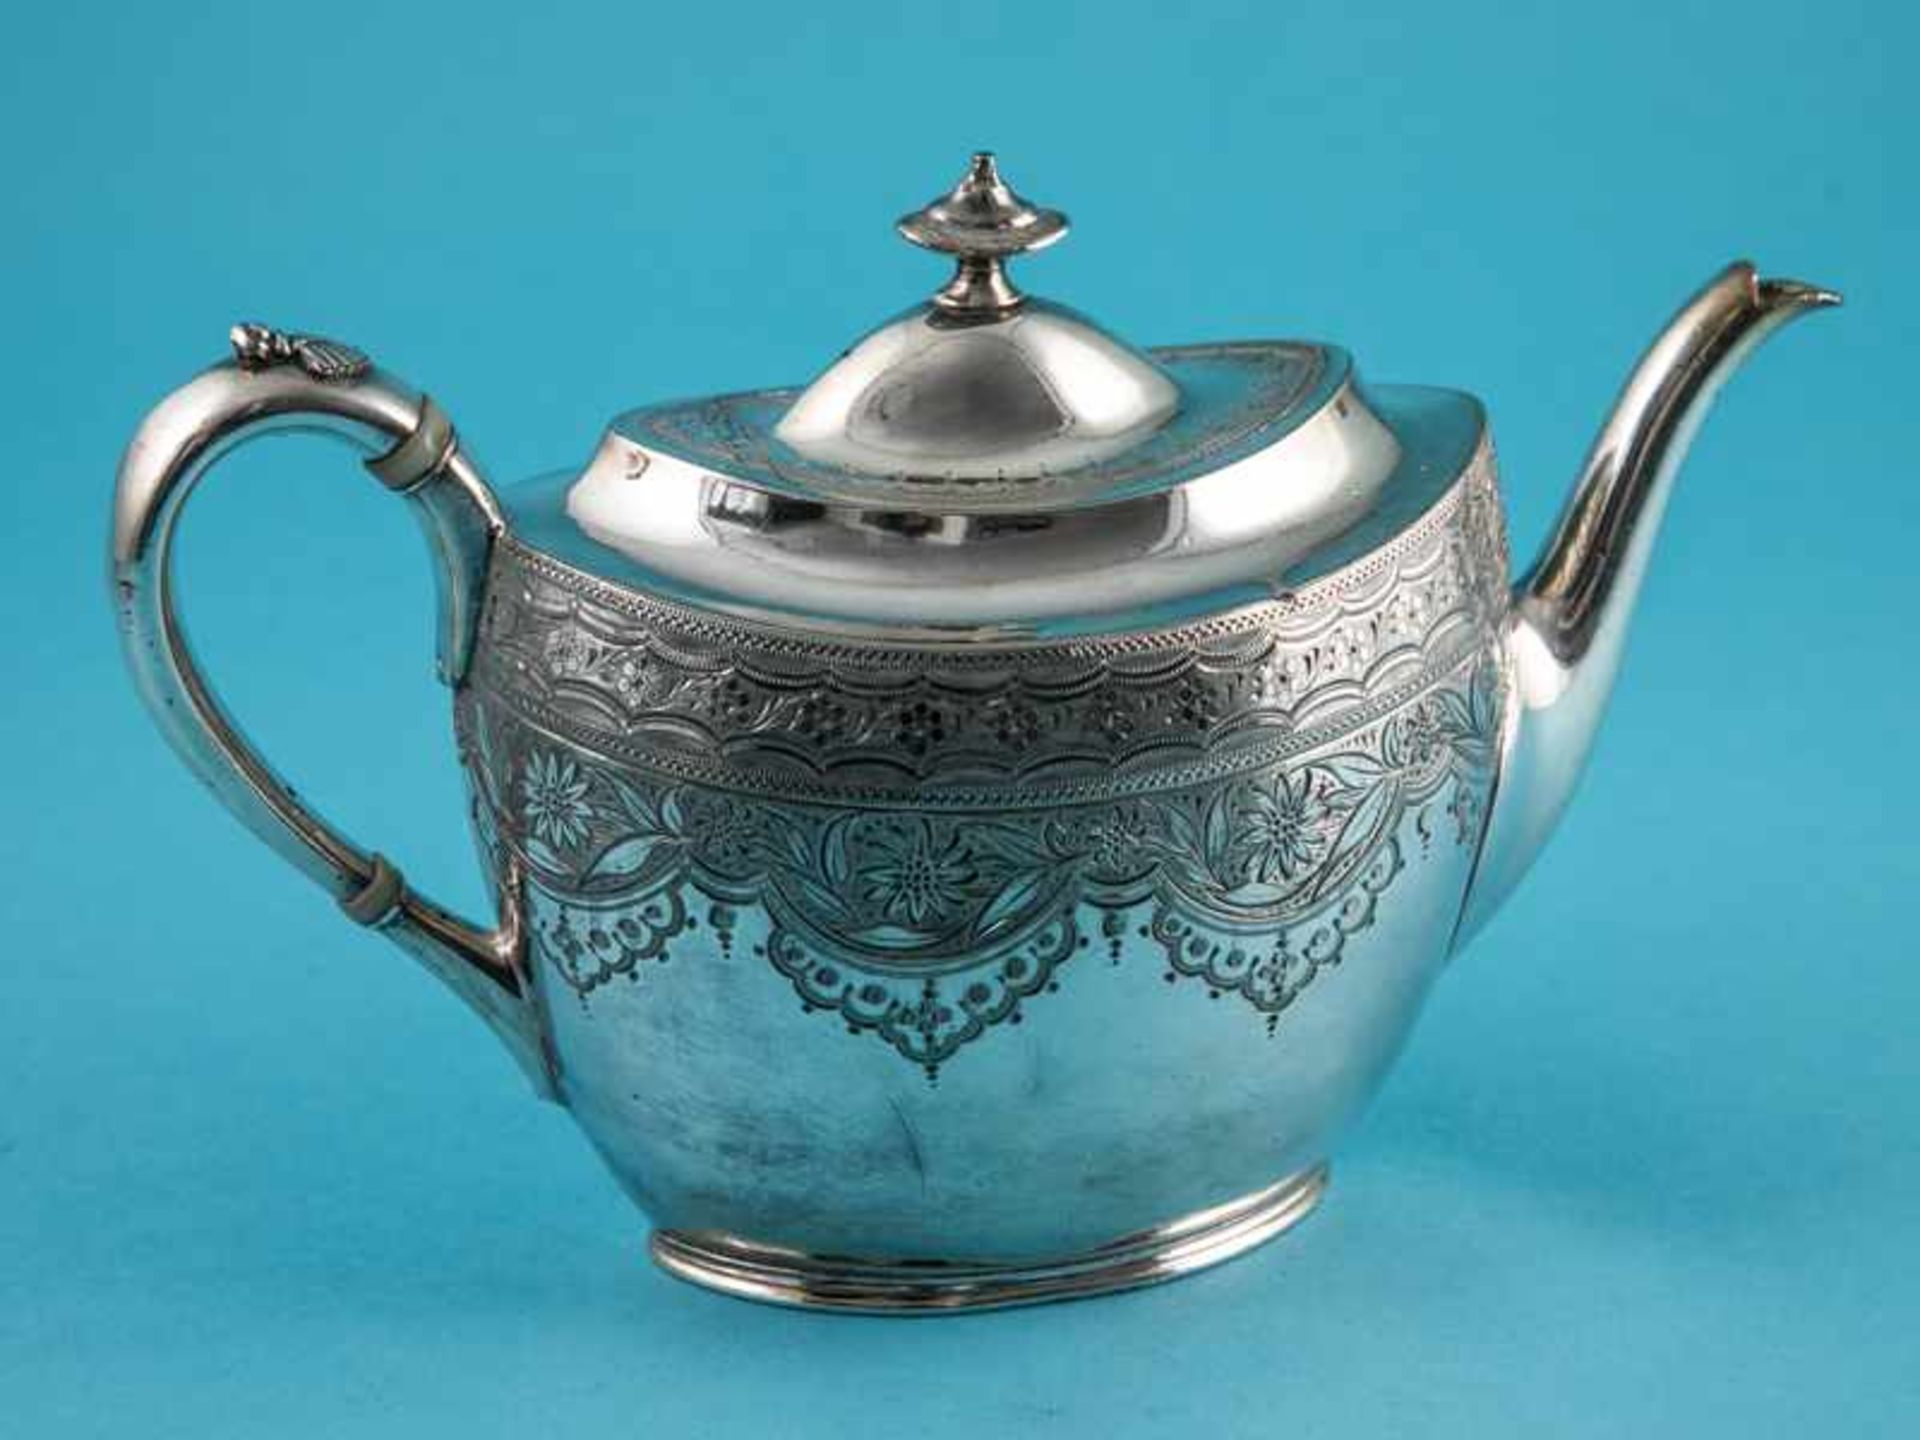 Spät-Victorianische Teekanne, James Dixon & Sons, Sheffield, England, Ende 19. Jh. Versilbert auf - Bild 5 aus 7